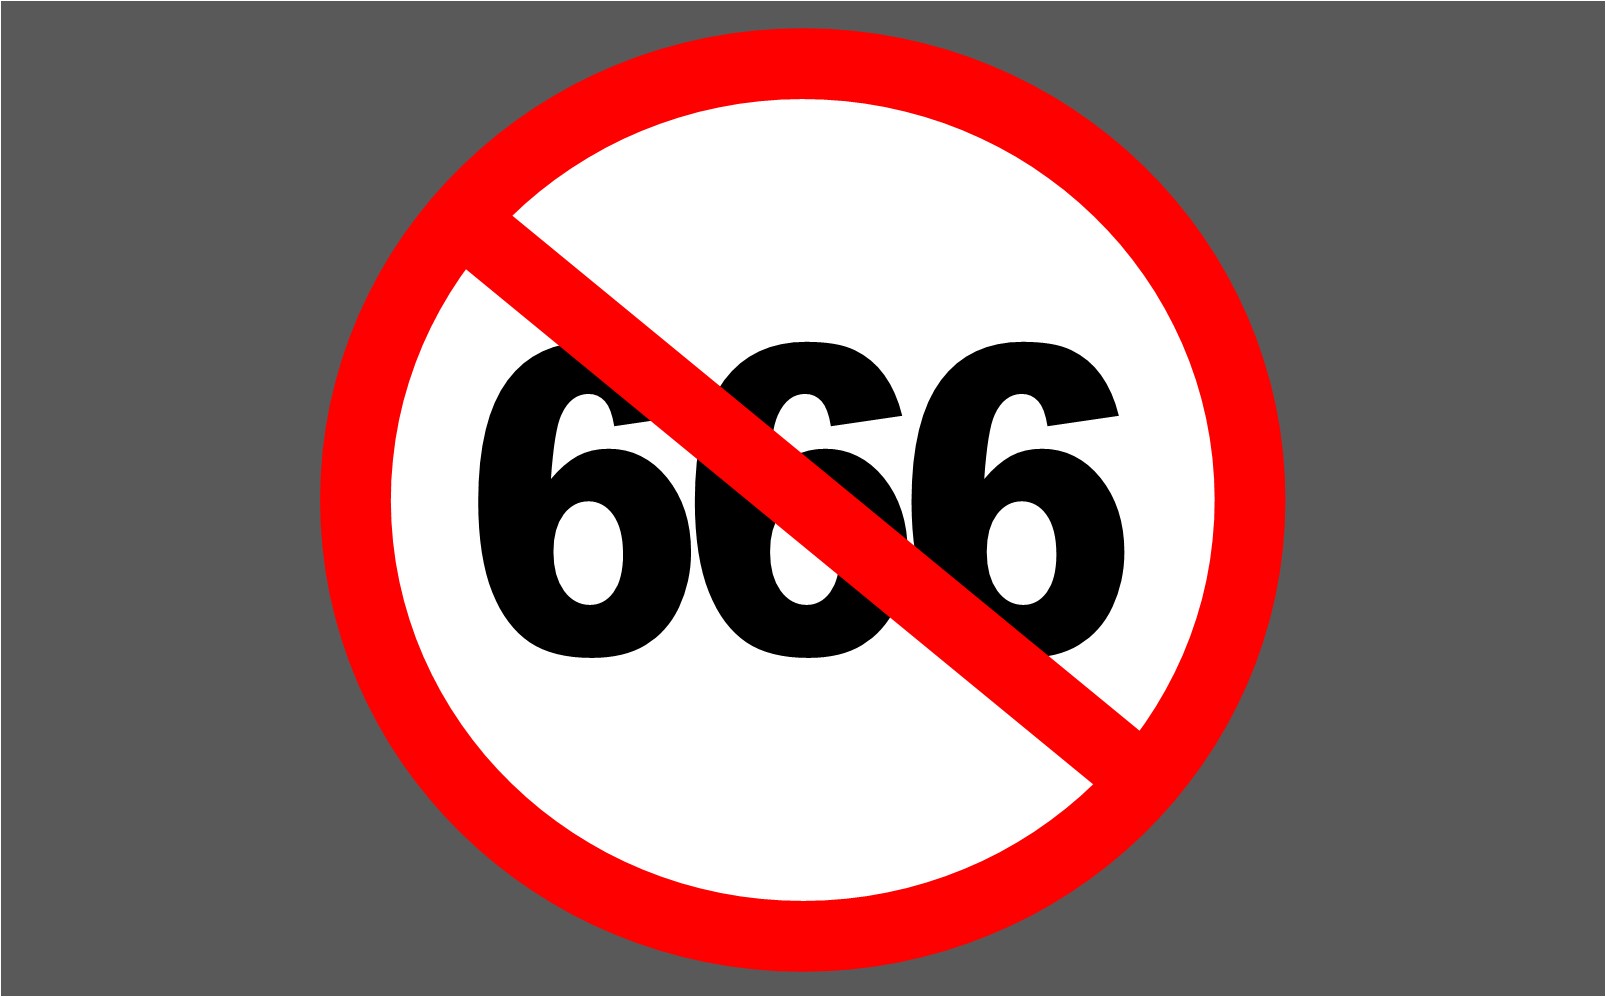 STOP 666